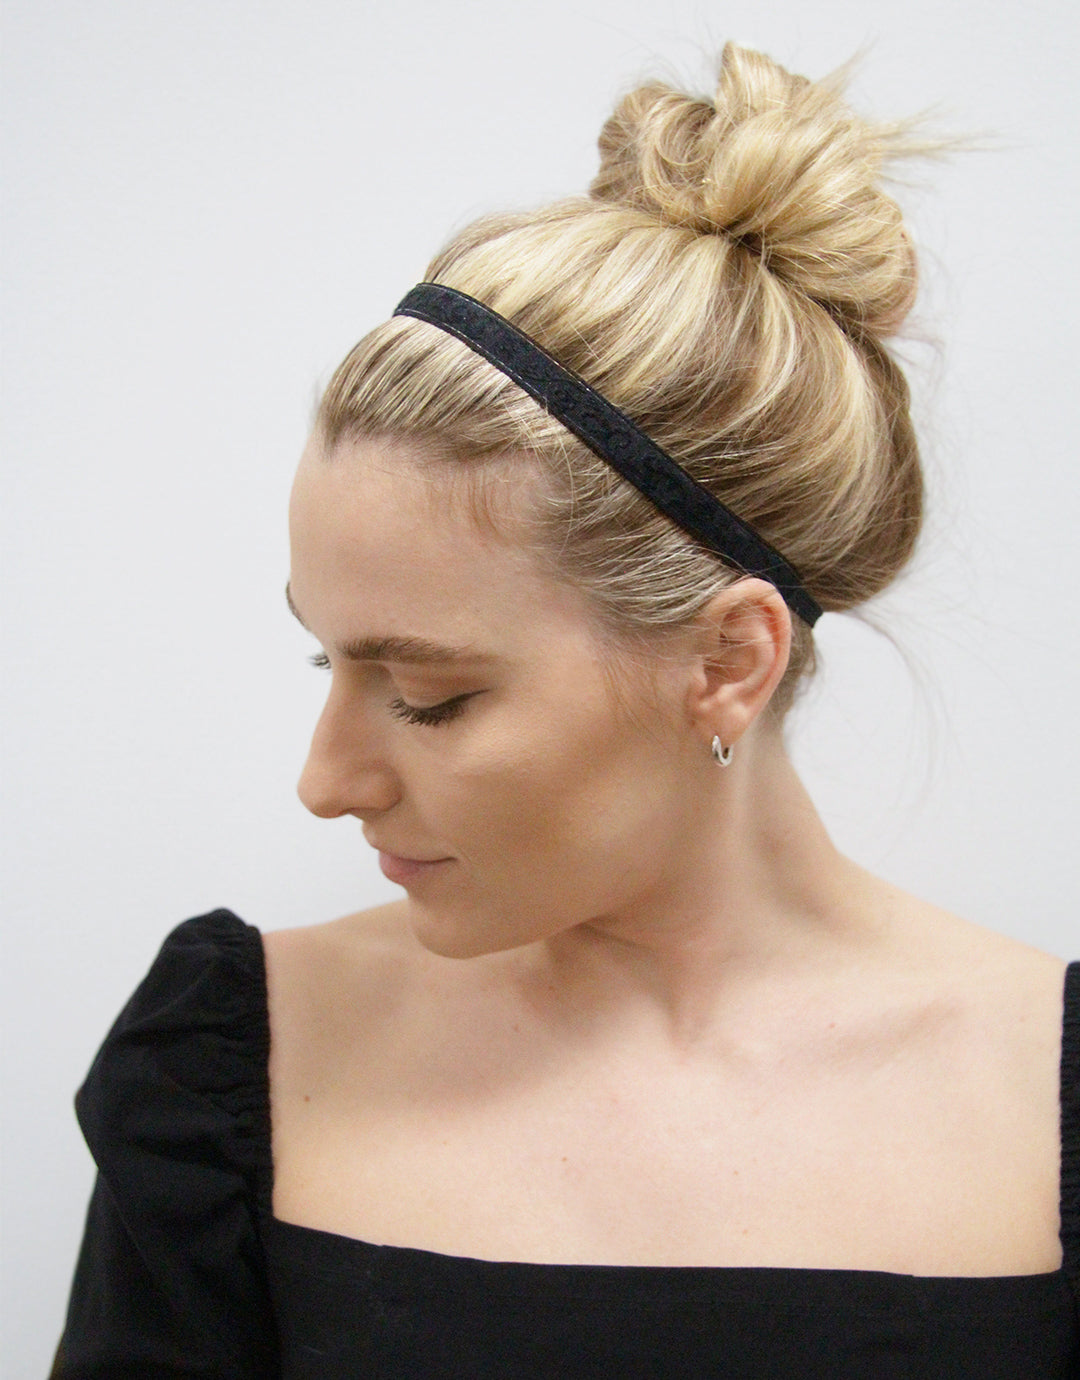 Black Synthetic Hair Bow Headband